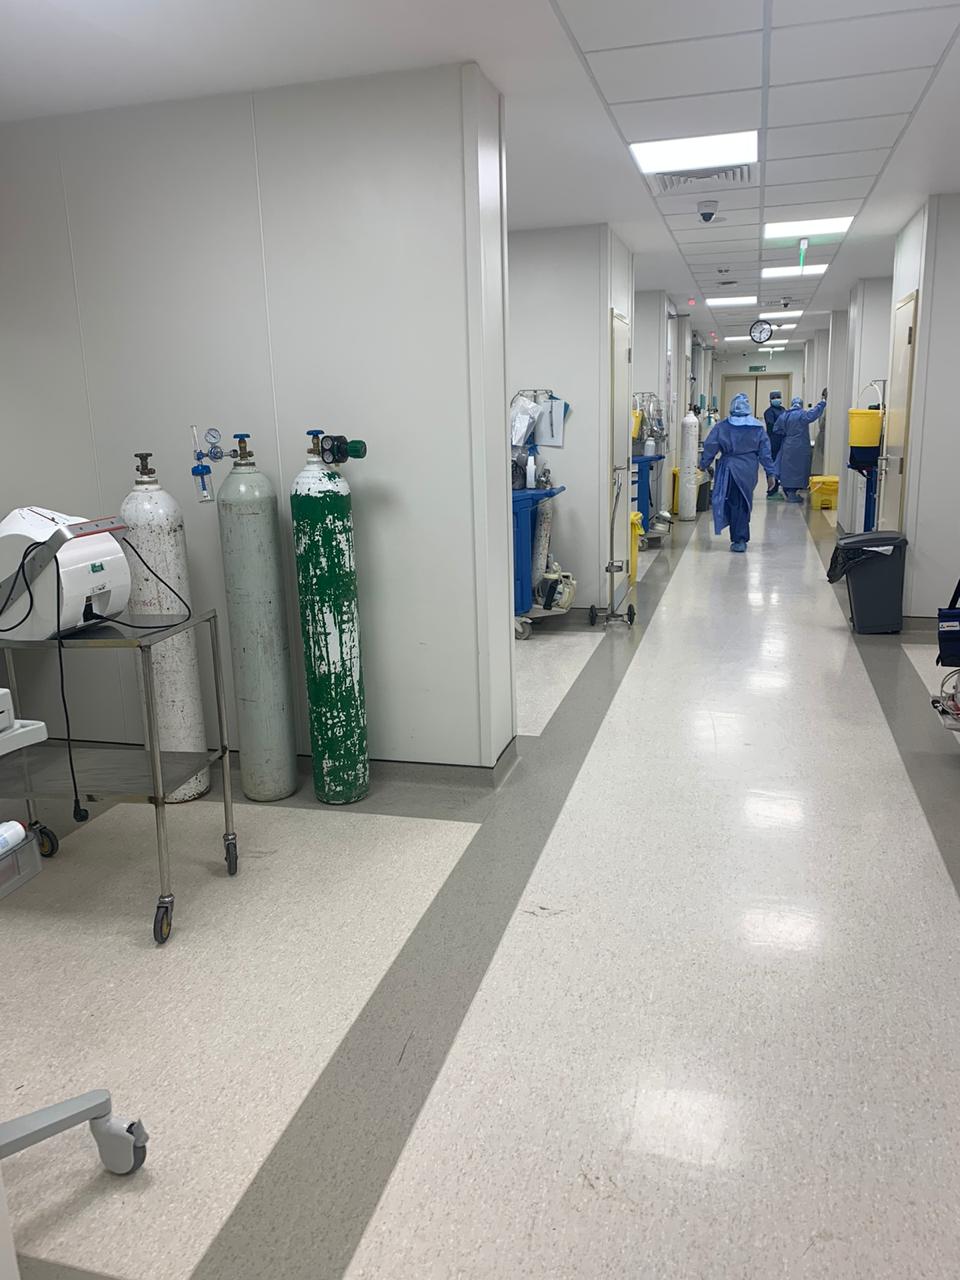 مستشفى الملك فهد ينهي مشروع رفع الطاقة الاستيعابية لشبكة الأكسجين